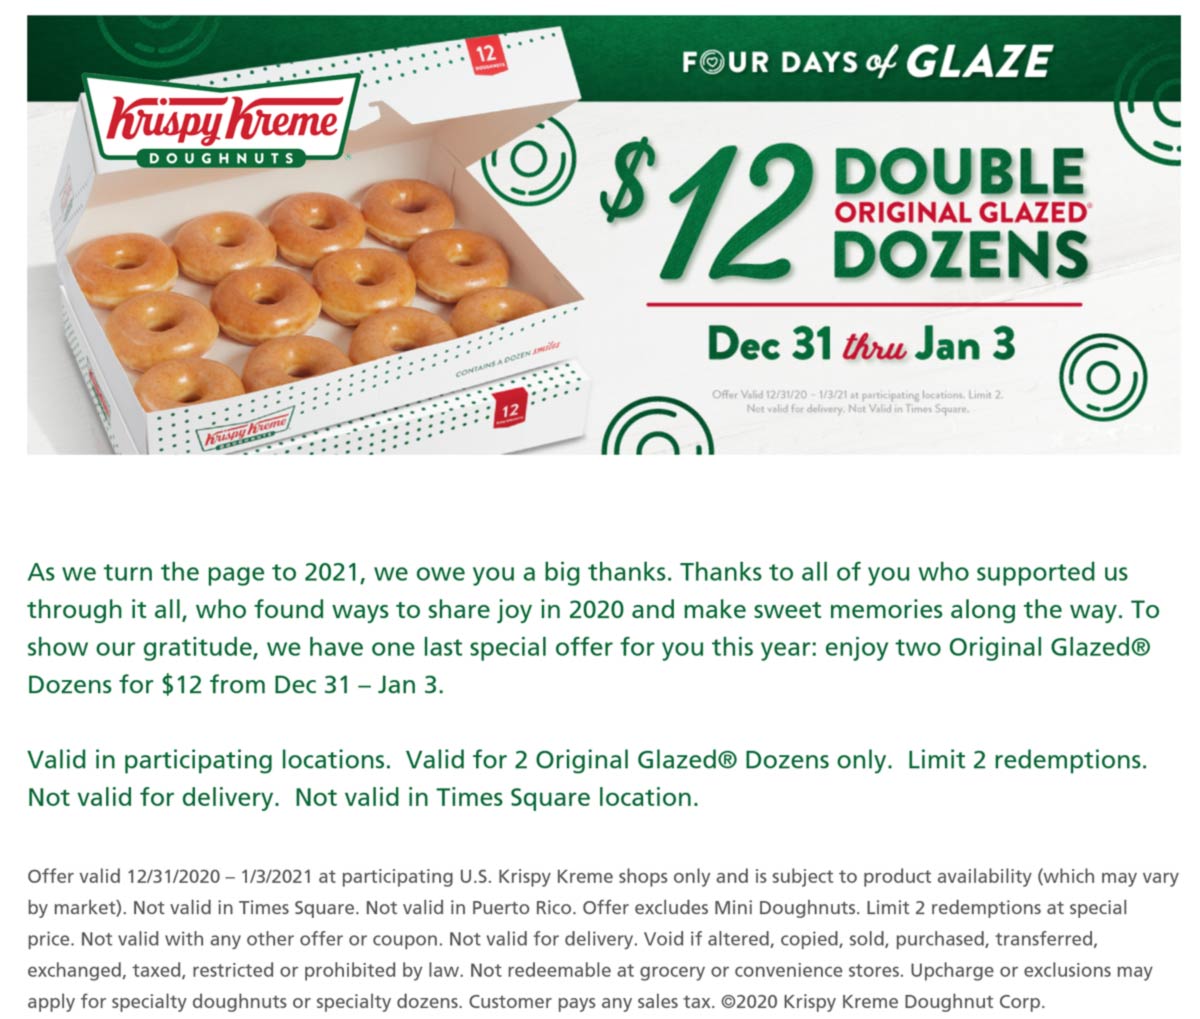 Krispy Kreme restaurants Coupon  2 dozen glazed doughnuts for $12 at Krispy Kreme donuts #krispykreme 